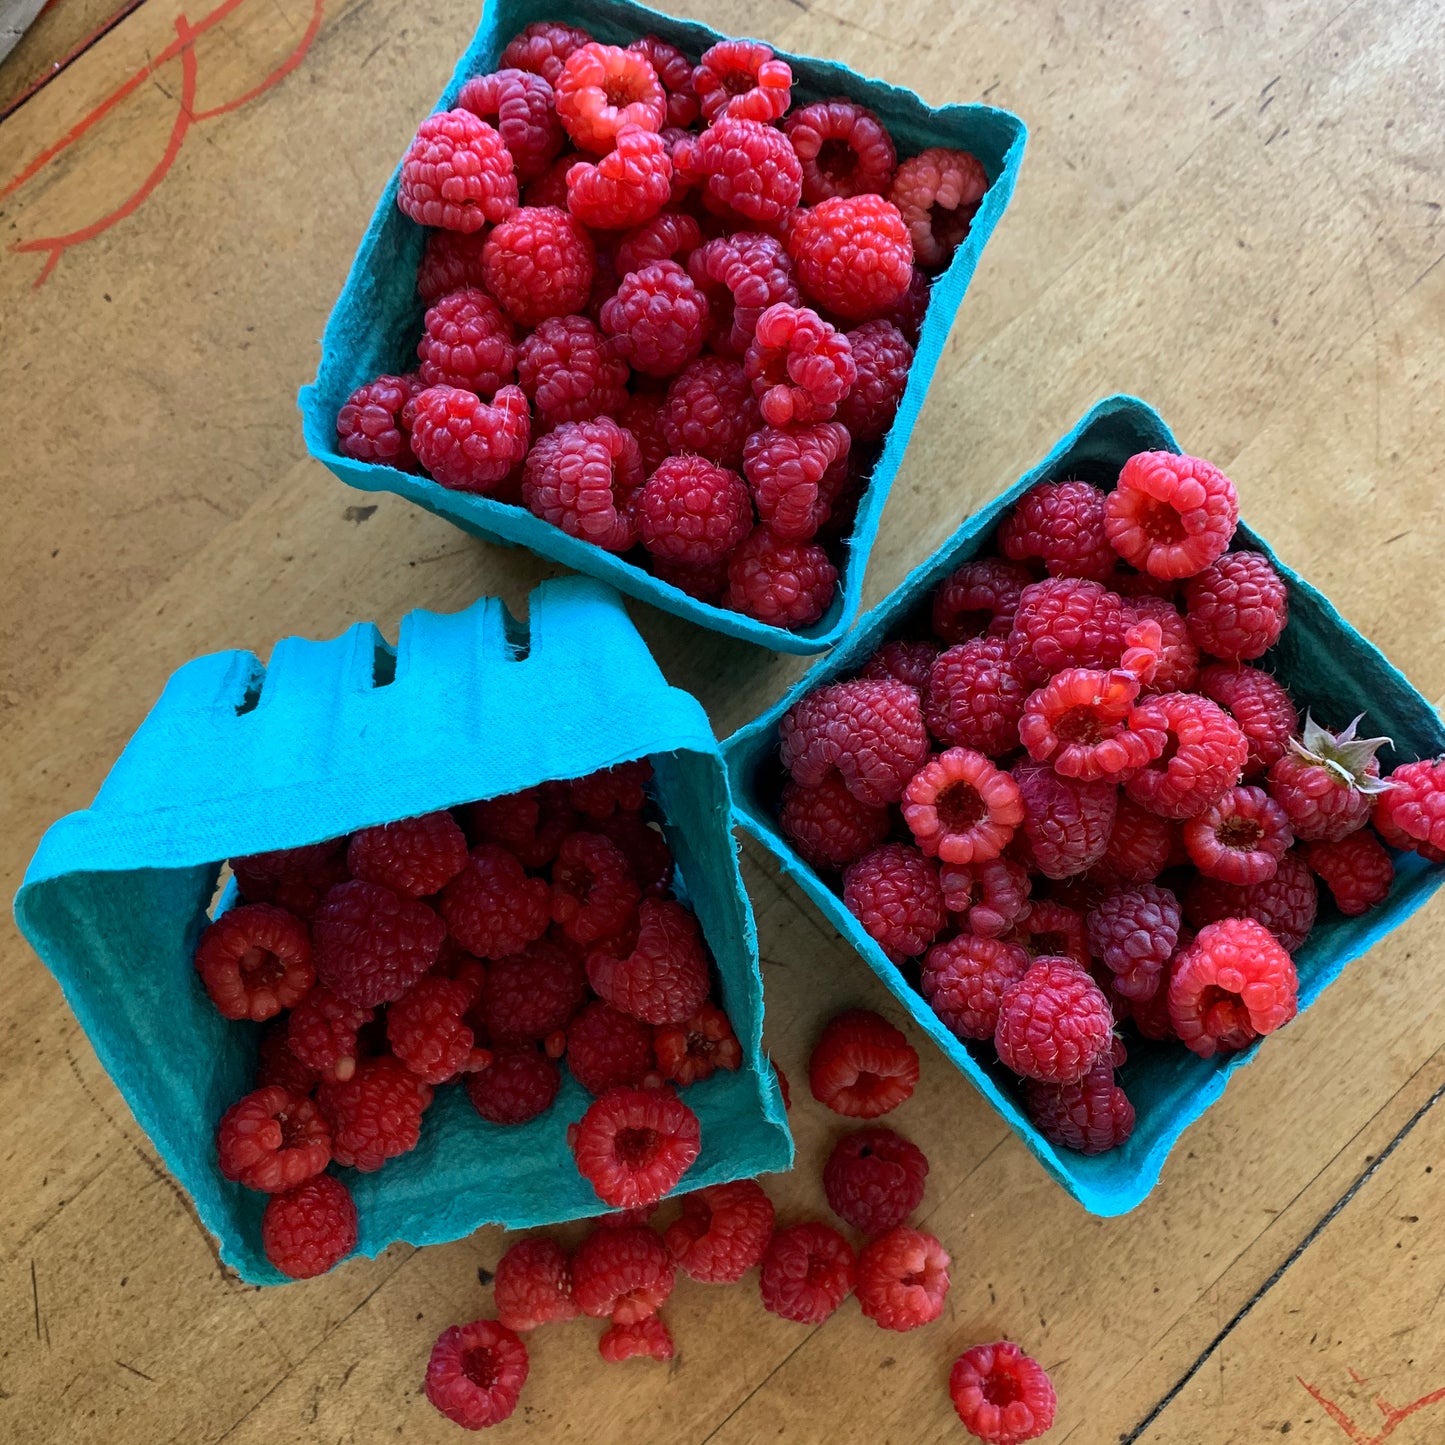 Raspberries ~ Pre-Picked